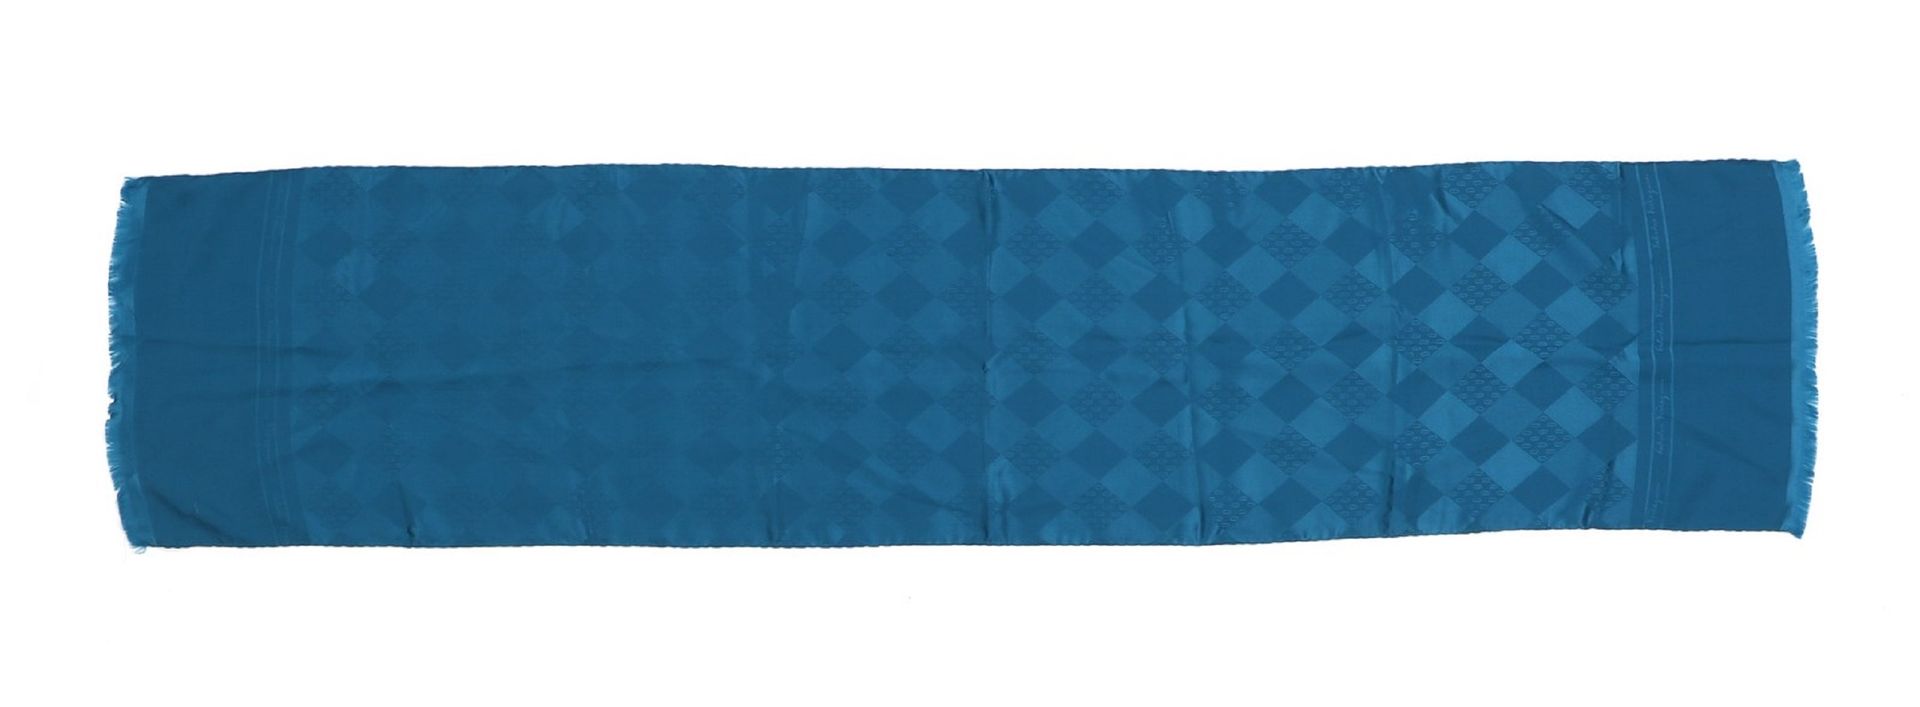 SALVATORE FERRAGAMO Teal green silk scarf. 青绿色的丝巾。丝质。厘米145,00 x 30,00。赠送Salvator&hellip;